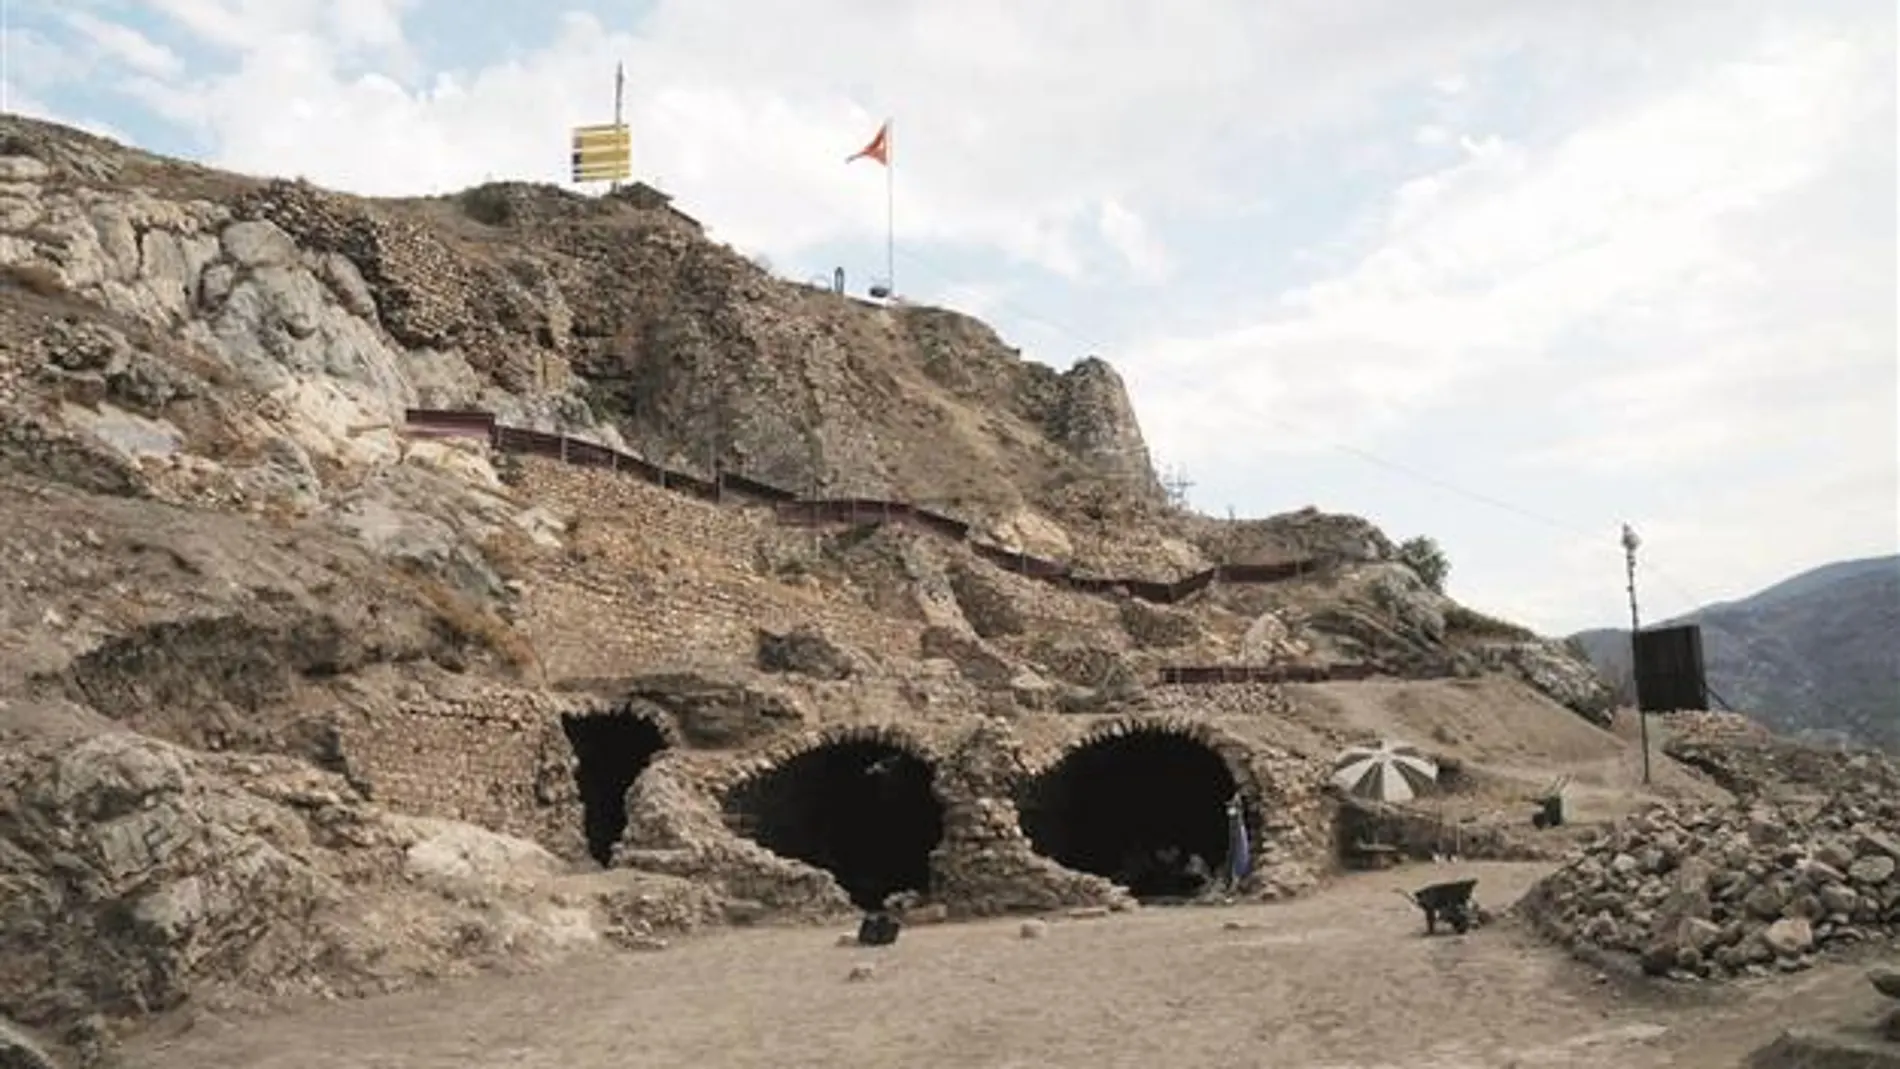 Imagen de la entrada a los túneles que conducían al castillo de Tokat, en los que han sido localizadas las mazmorras